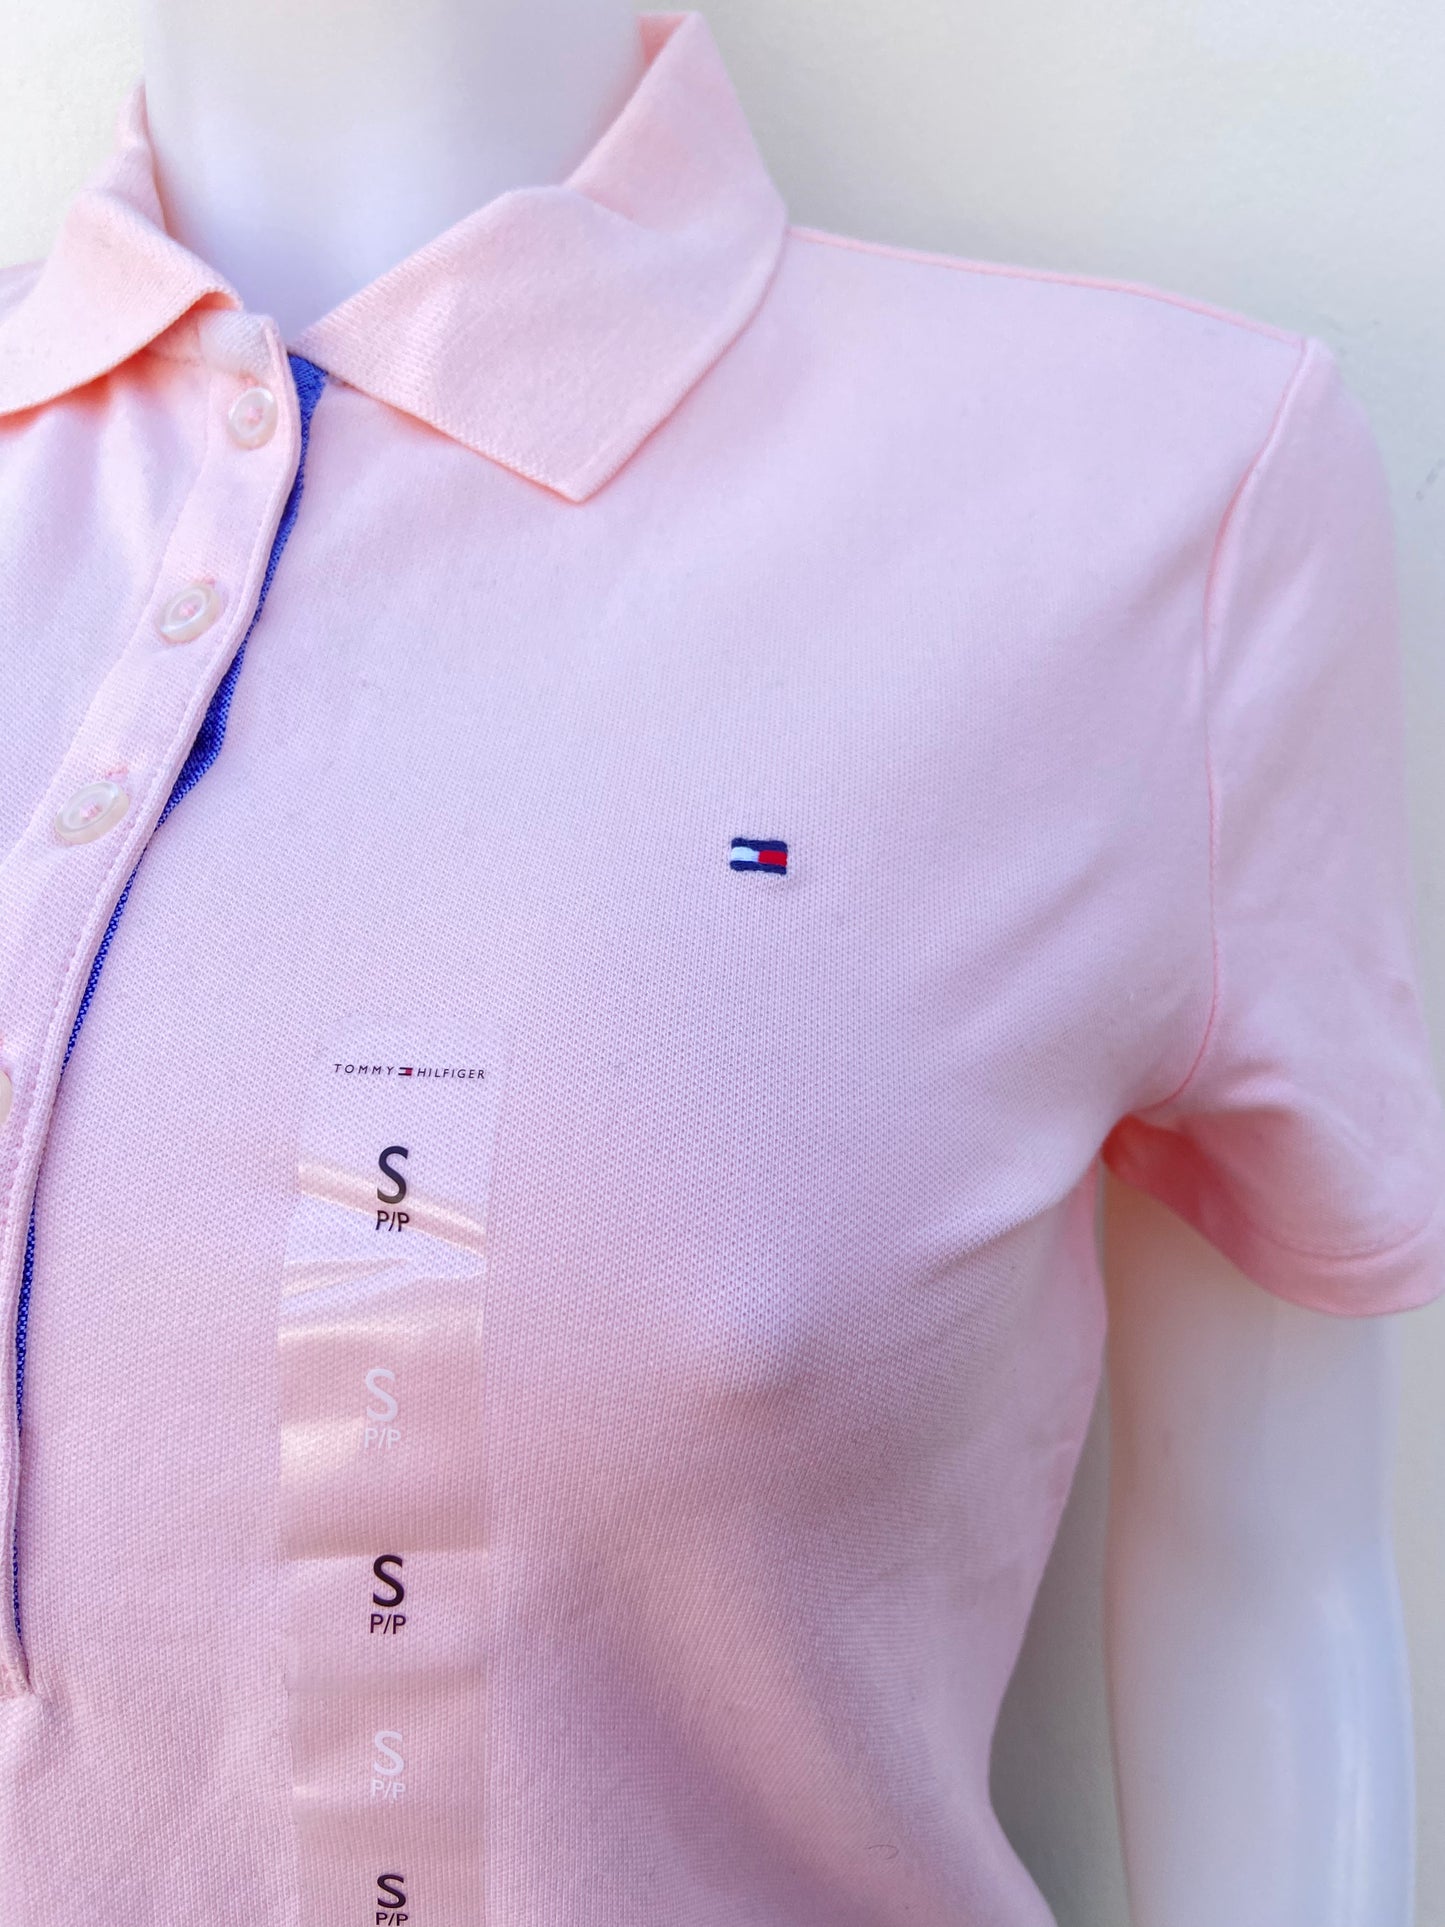 Polocher Tommy Hilfiger original rosado claro con botones en frente y logotipo de la marca.